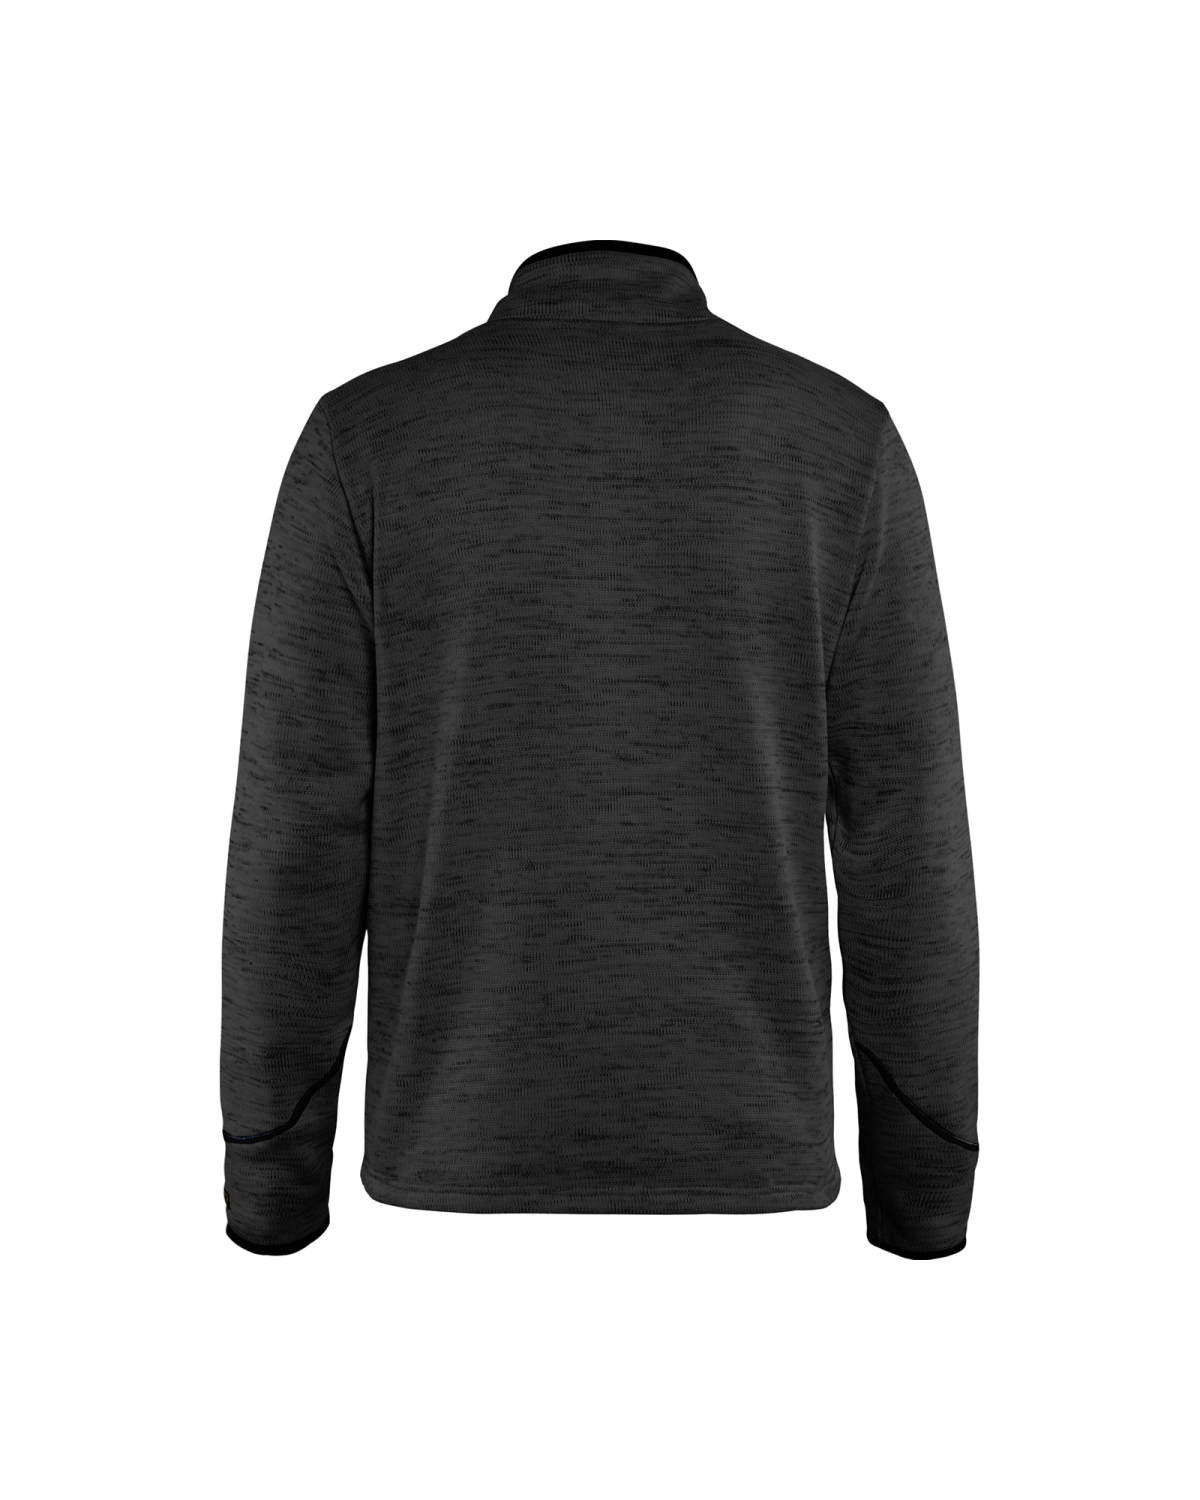 Blåkläder 4943 Gebreid Sweatshirt 1/2 rits - antraciet/wit - XL